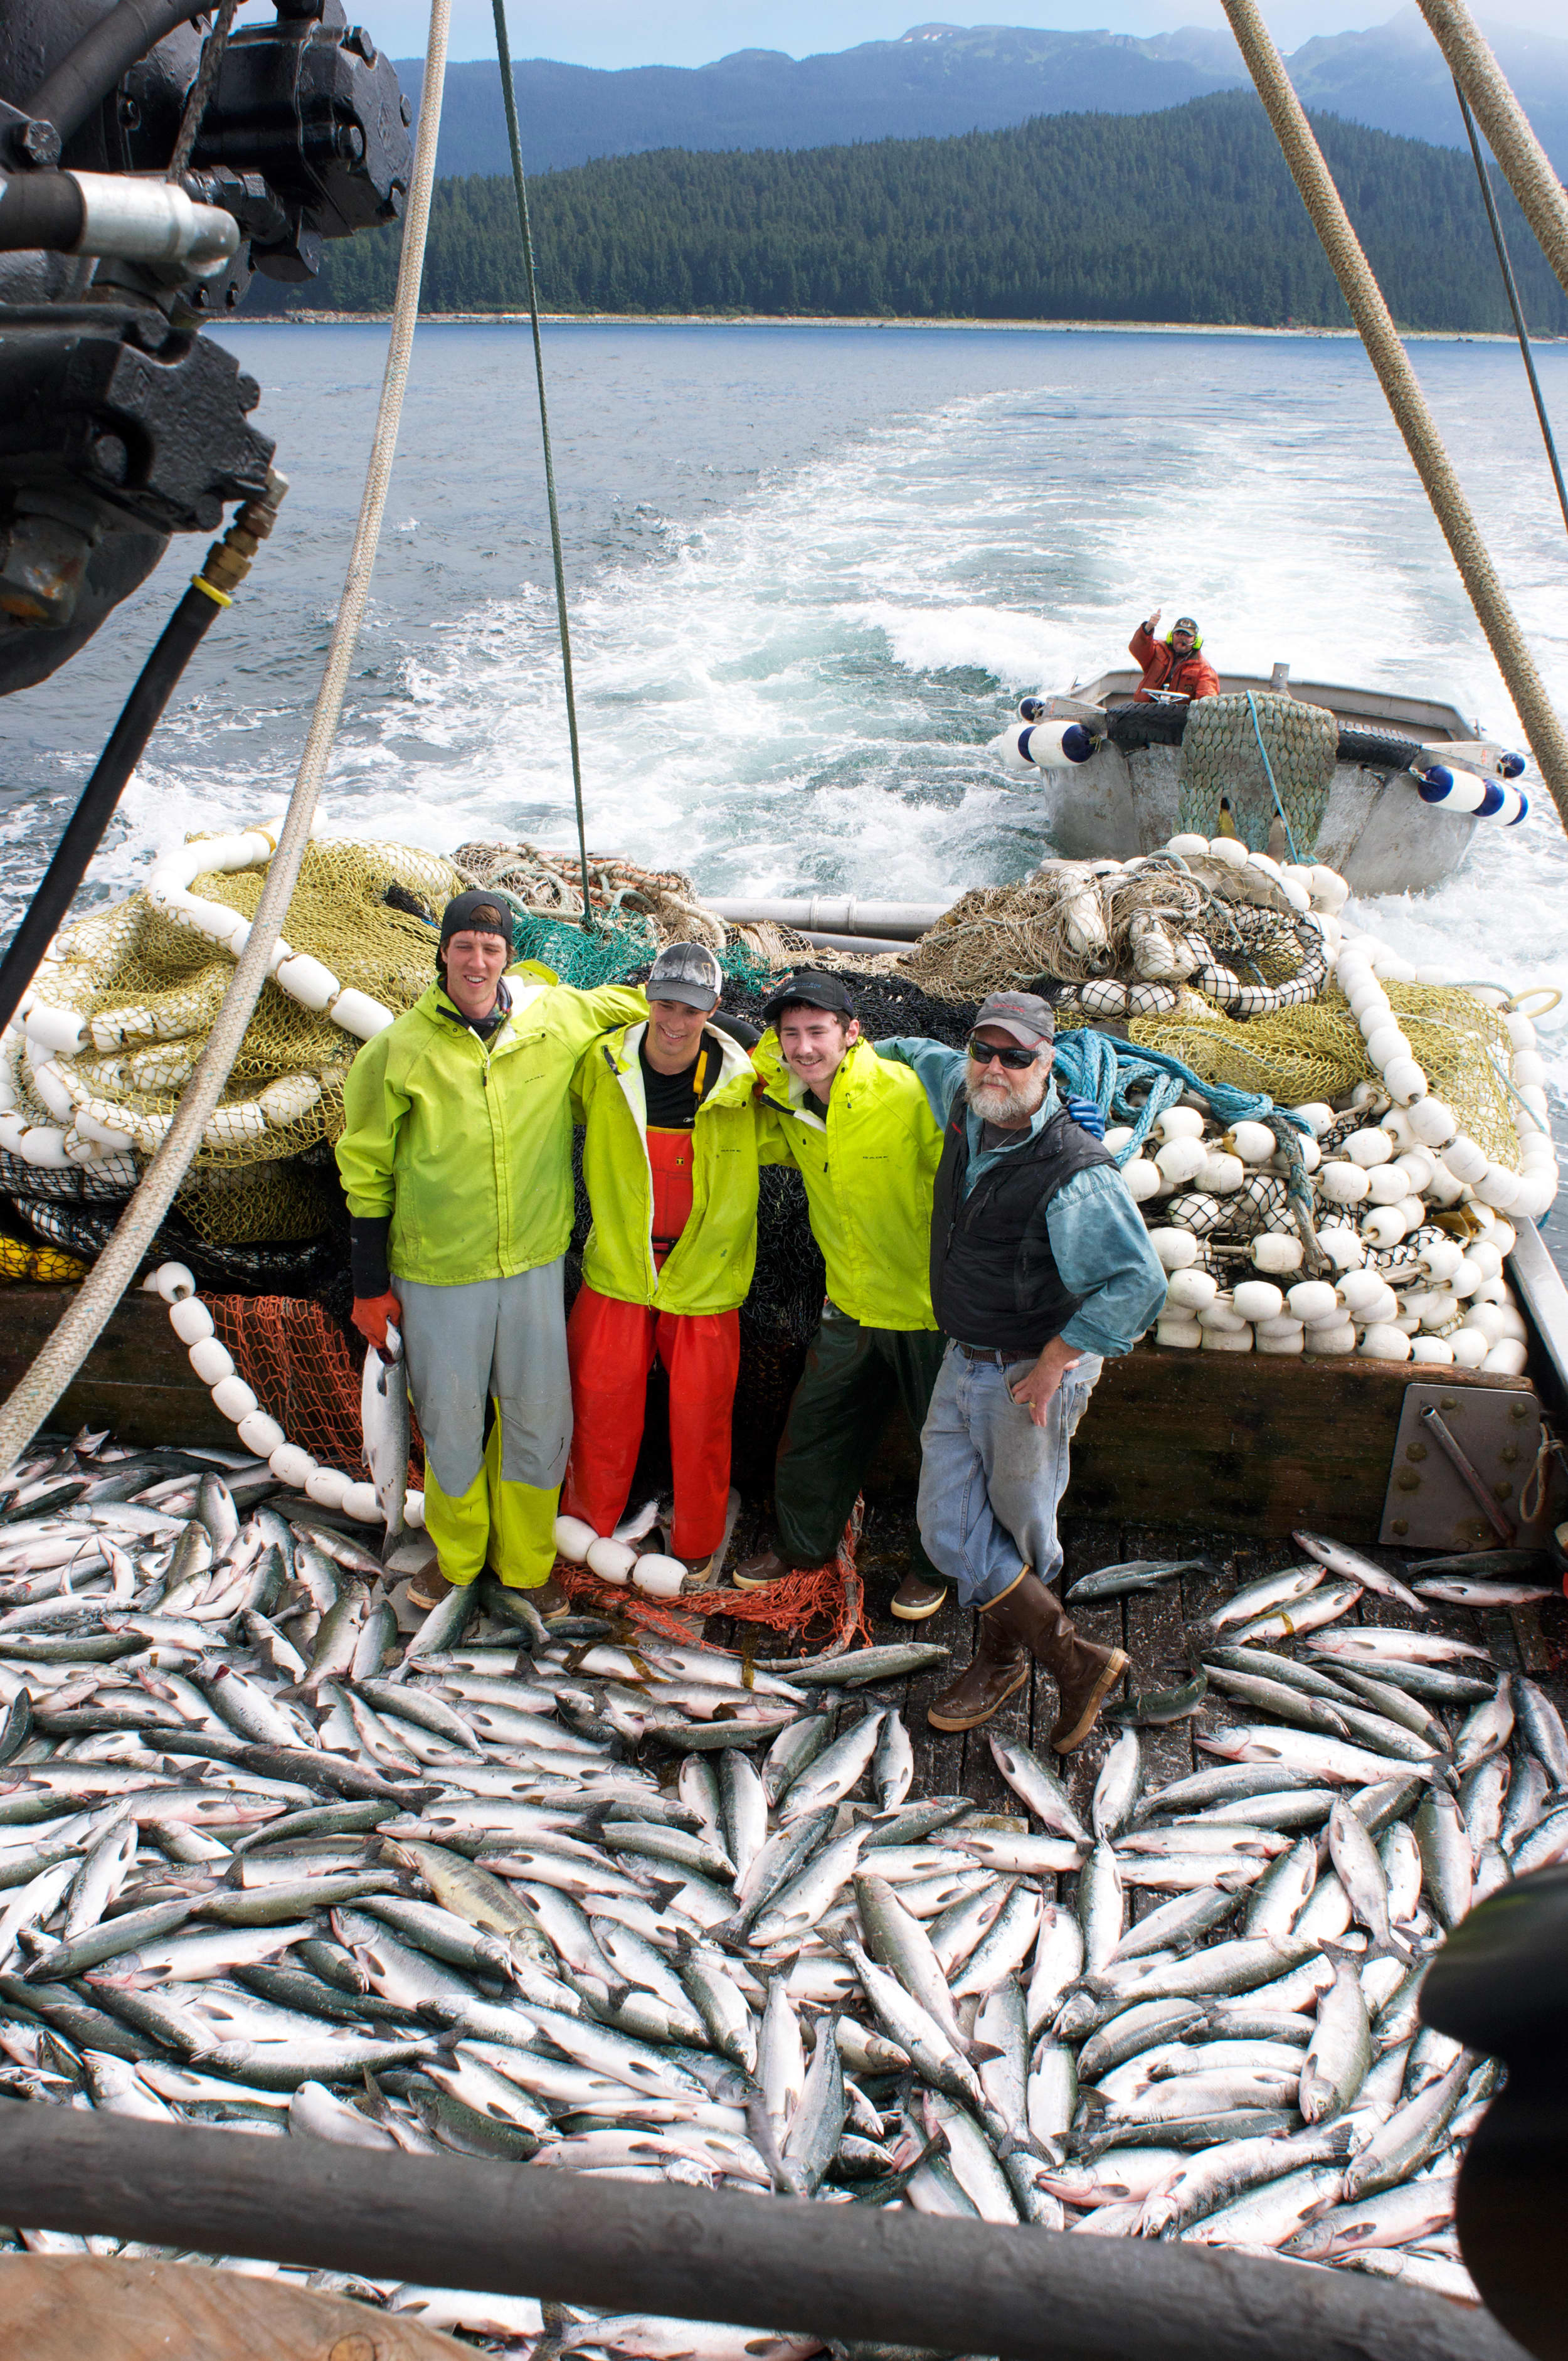 One Way to Catch Salmon In Alaska: Onboard the Purse Seine Owyhee